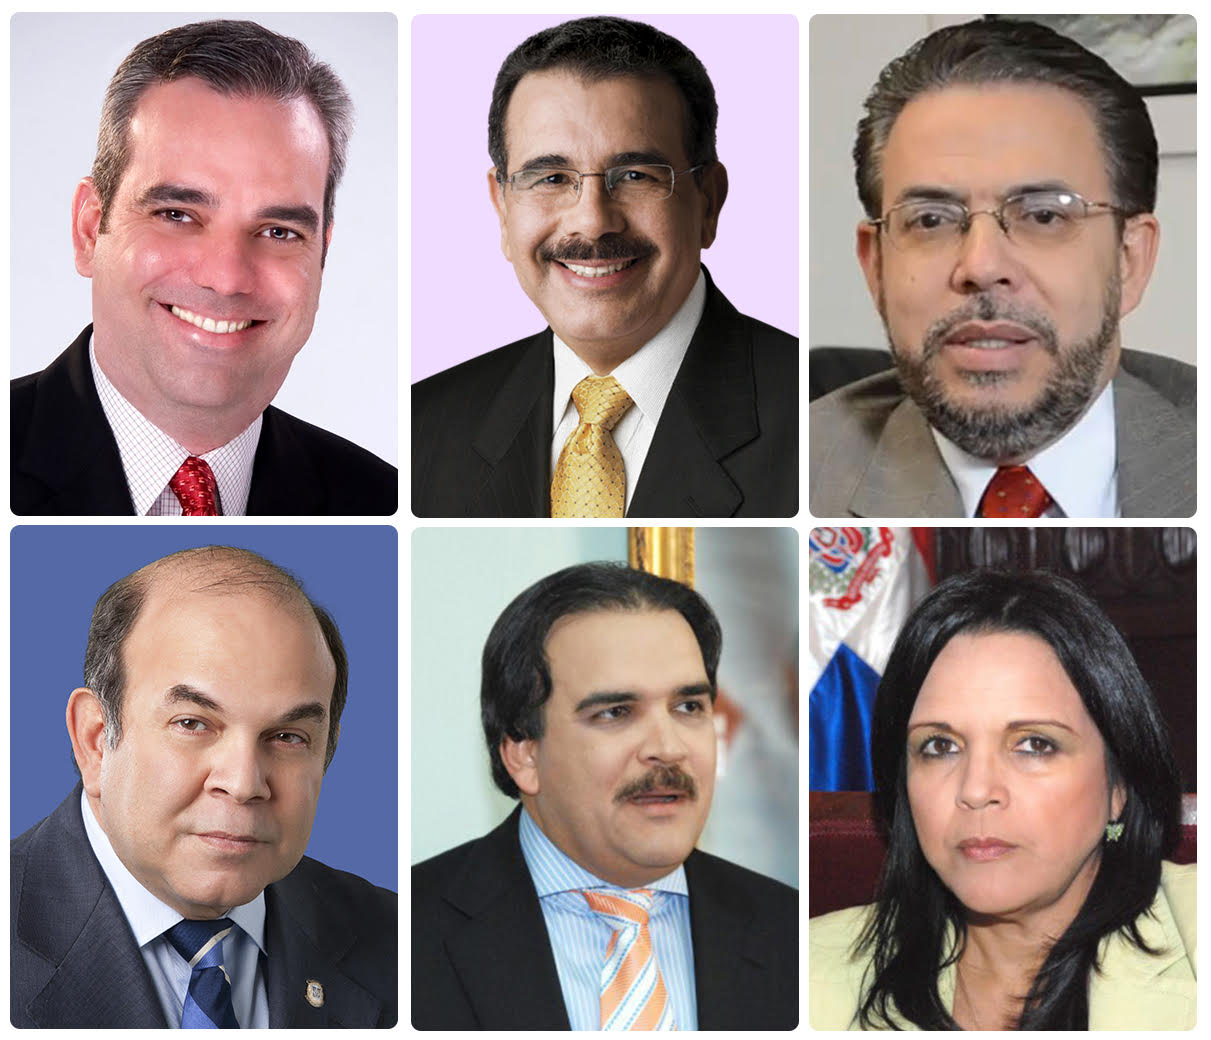 El lunes habrá debate televisado de candidatos, pero sin Danilo Medina